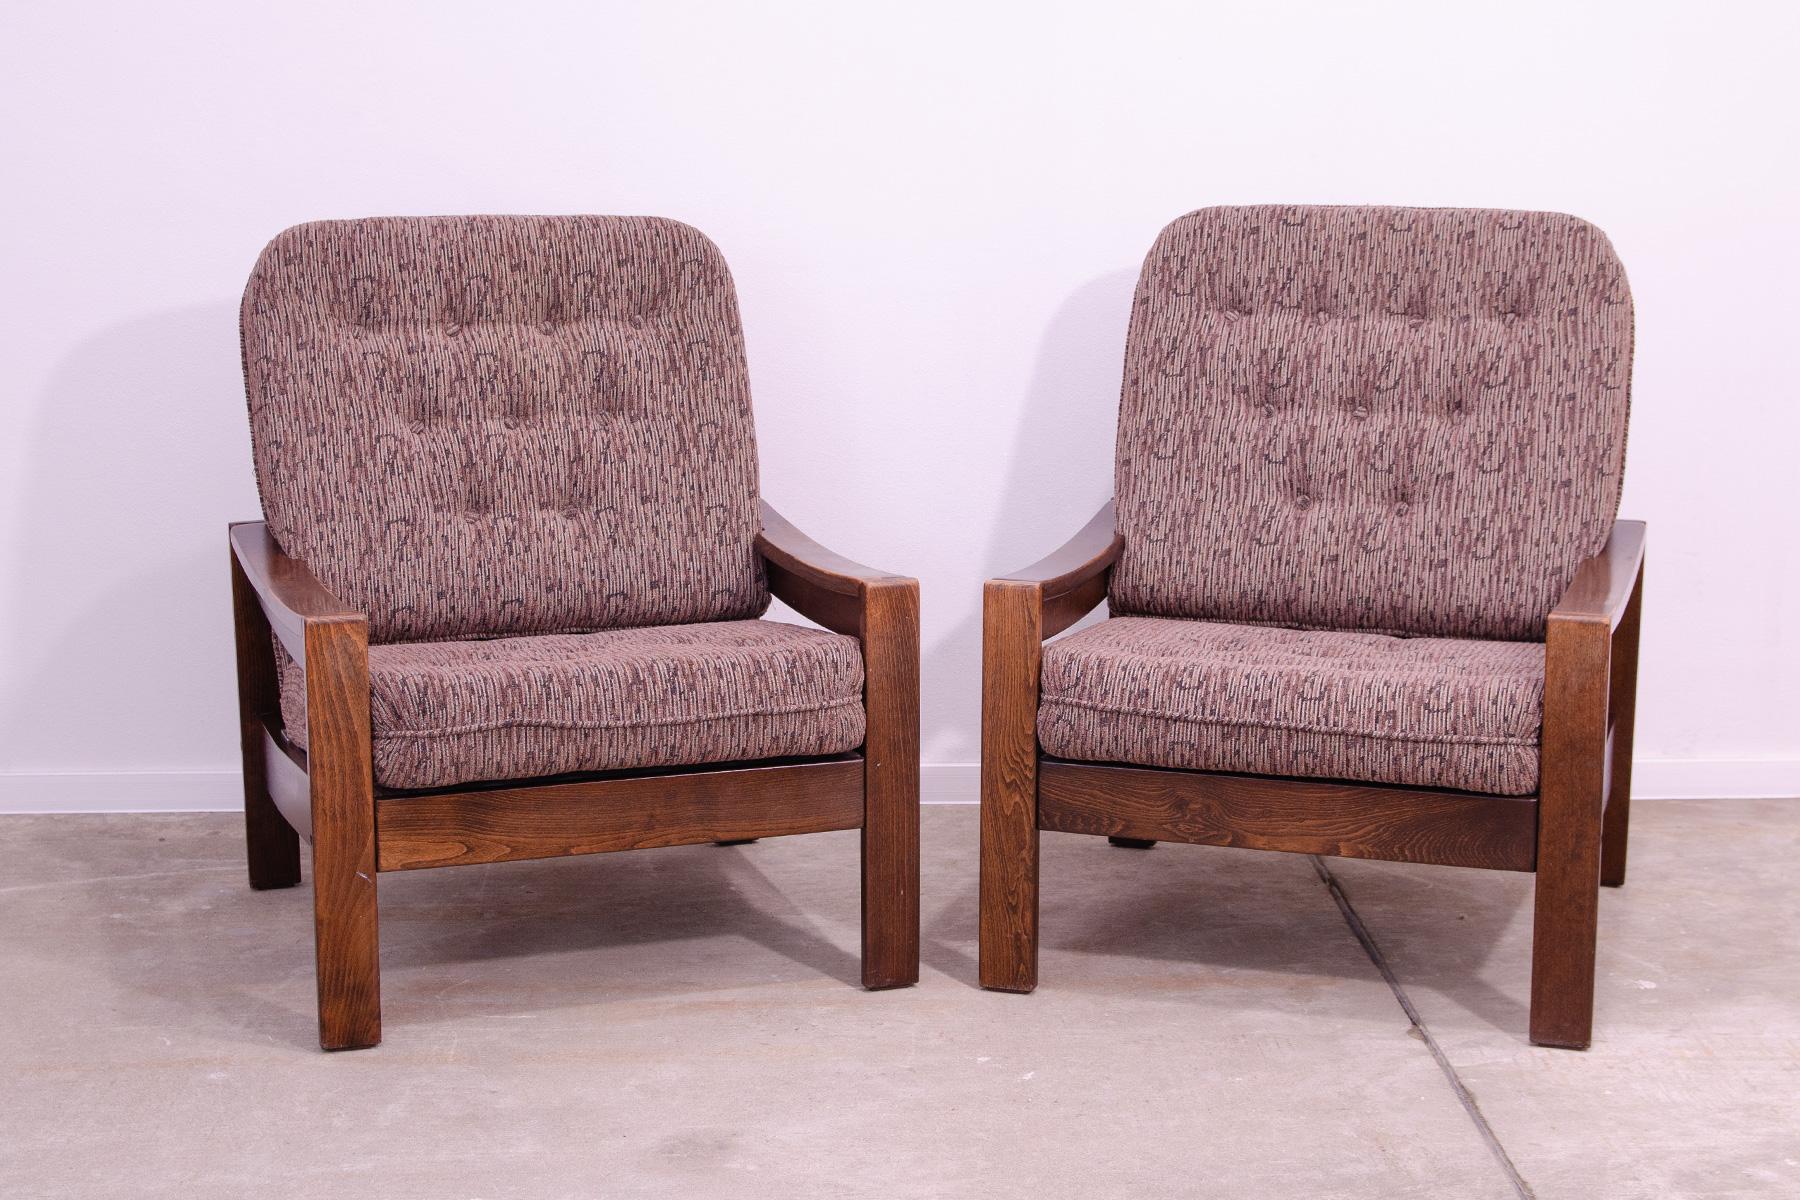 Ces fauteuils ont été fabriqués dans l'ancienne Tchécoslovaquie dans les années 1980.
Les chaises sont en bois de hêtre et les coussins sont recouverts de tissu.
Ils sont en très bon état vintage, sans dommages, montrant de légers signes d'âge et